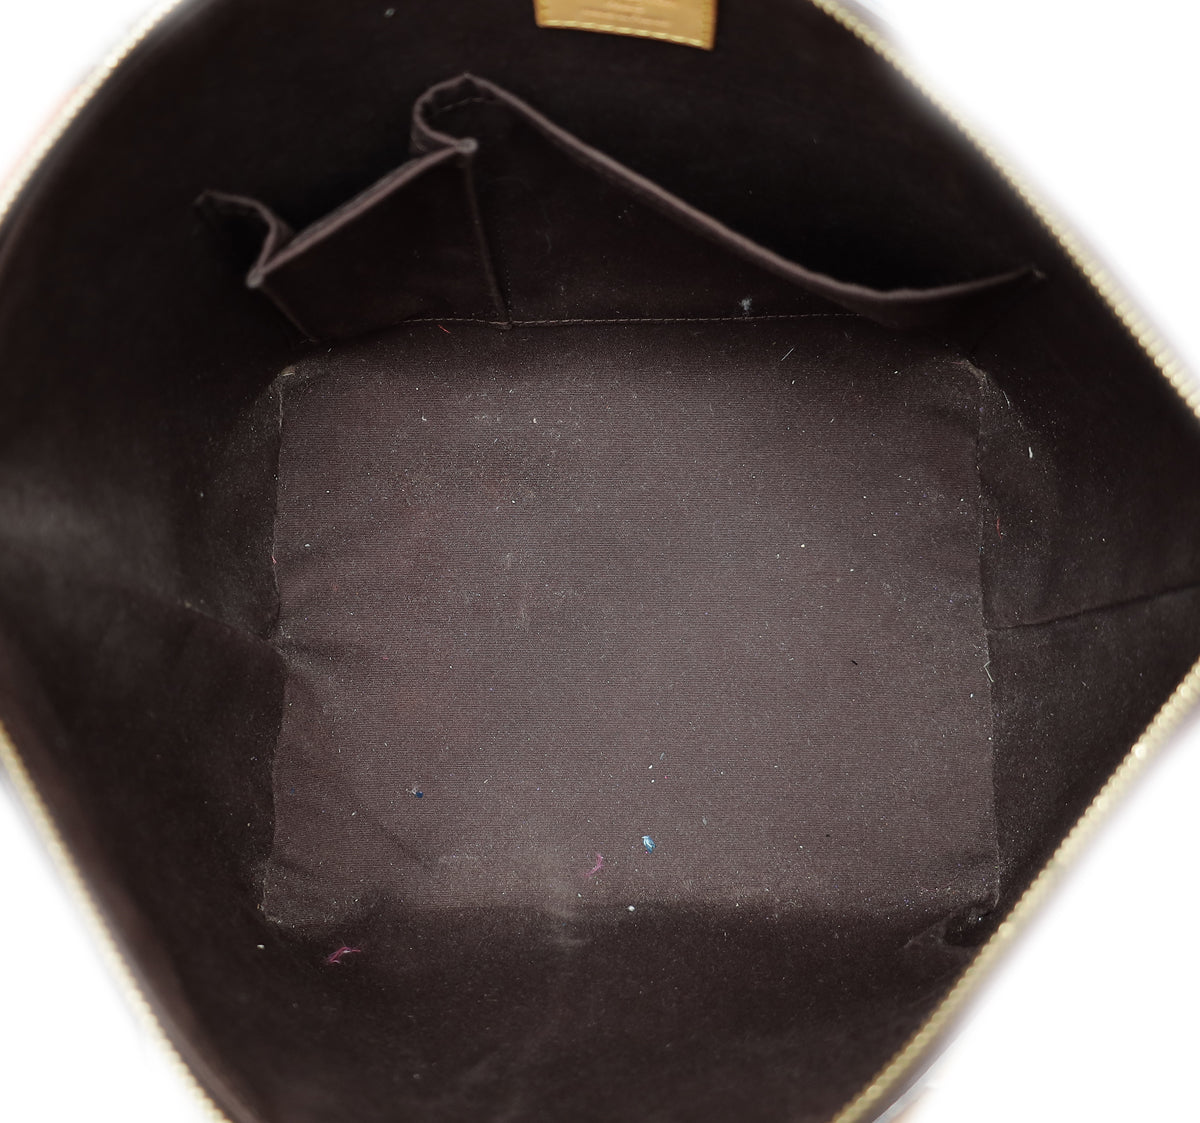 louis vuitton bellevue tote bag (fl0110), pm size, amarante